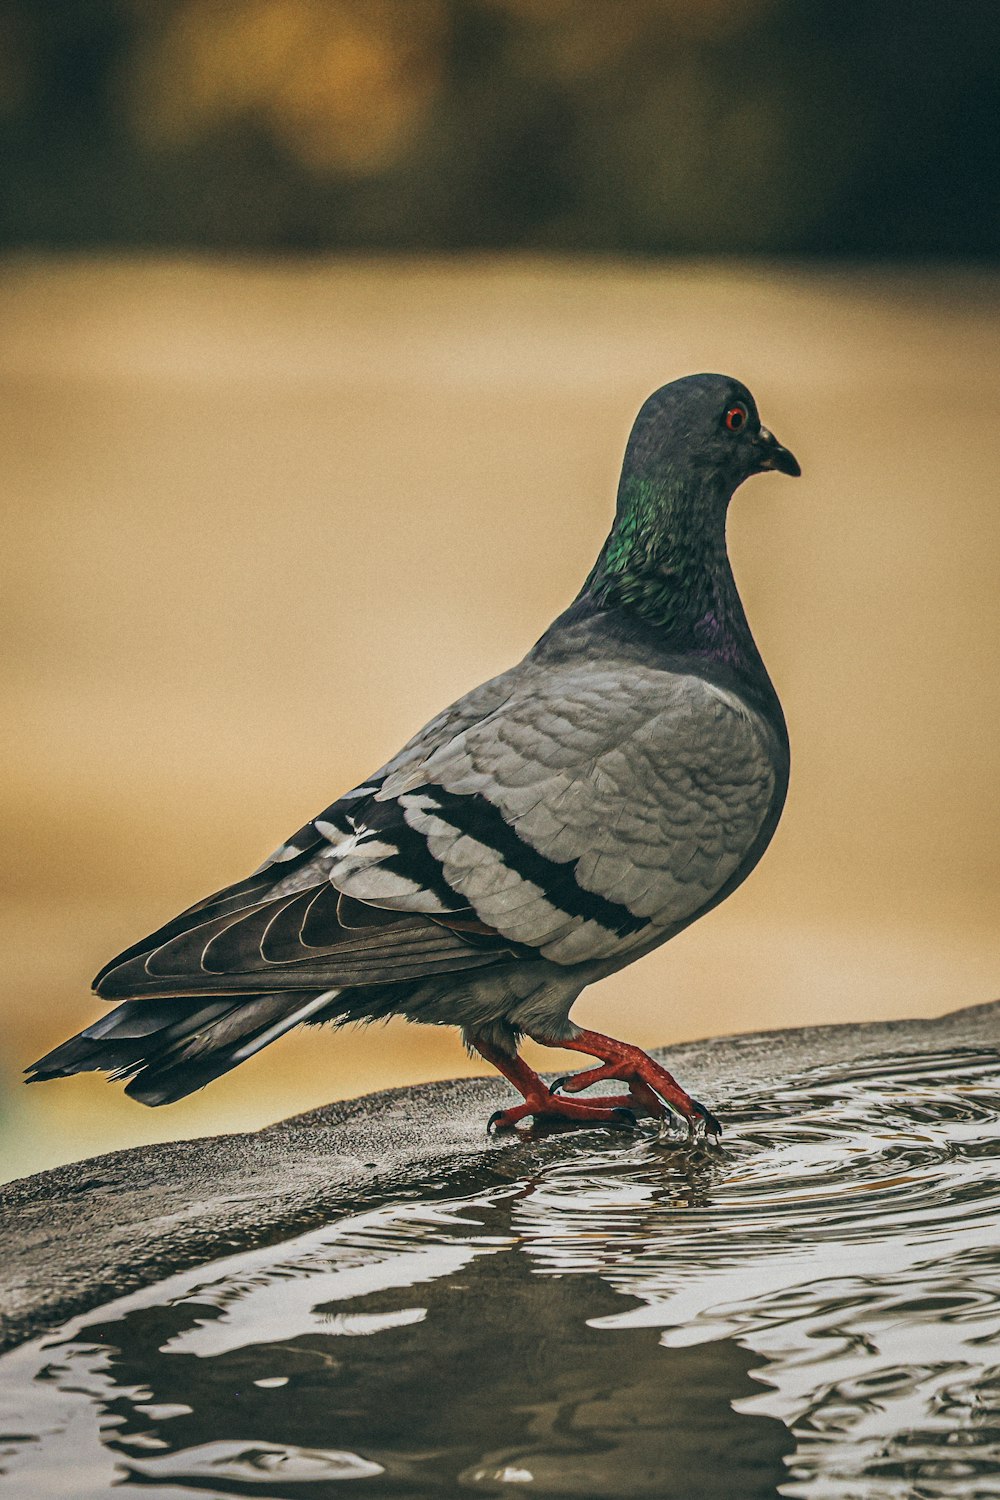 un pigeon debout sur une surface mouillée